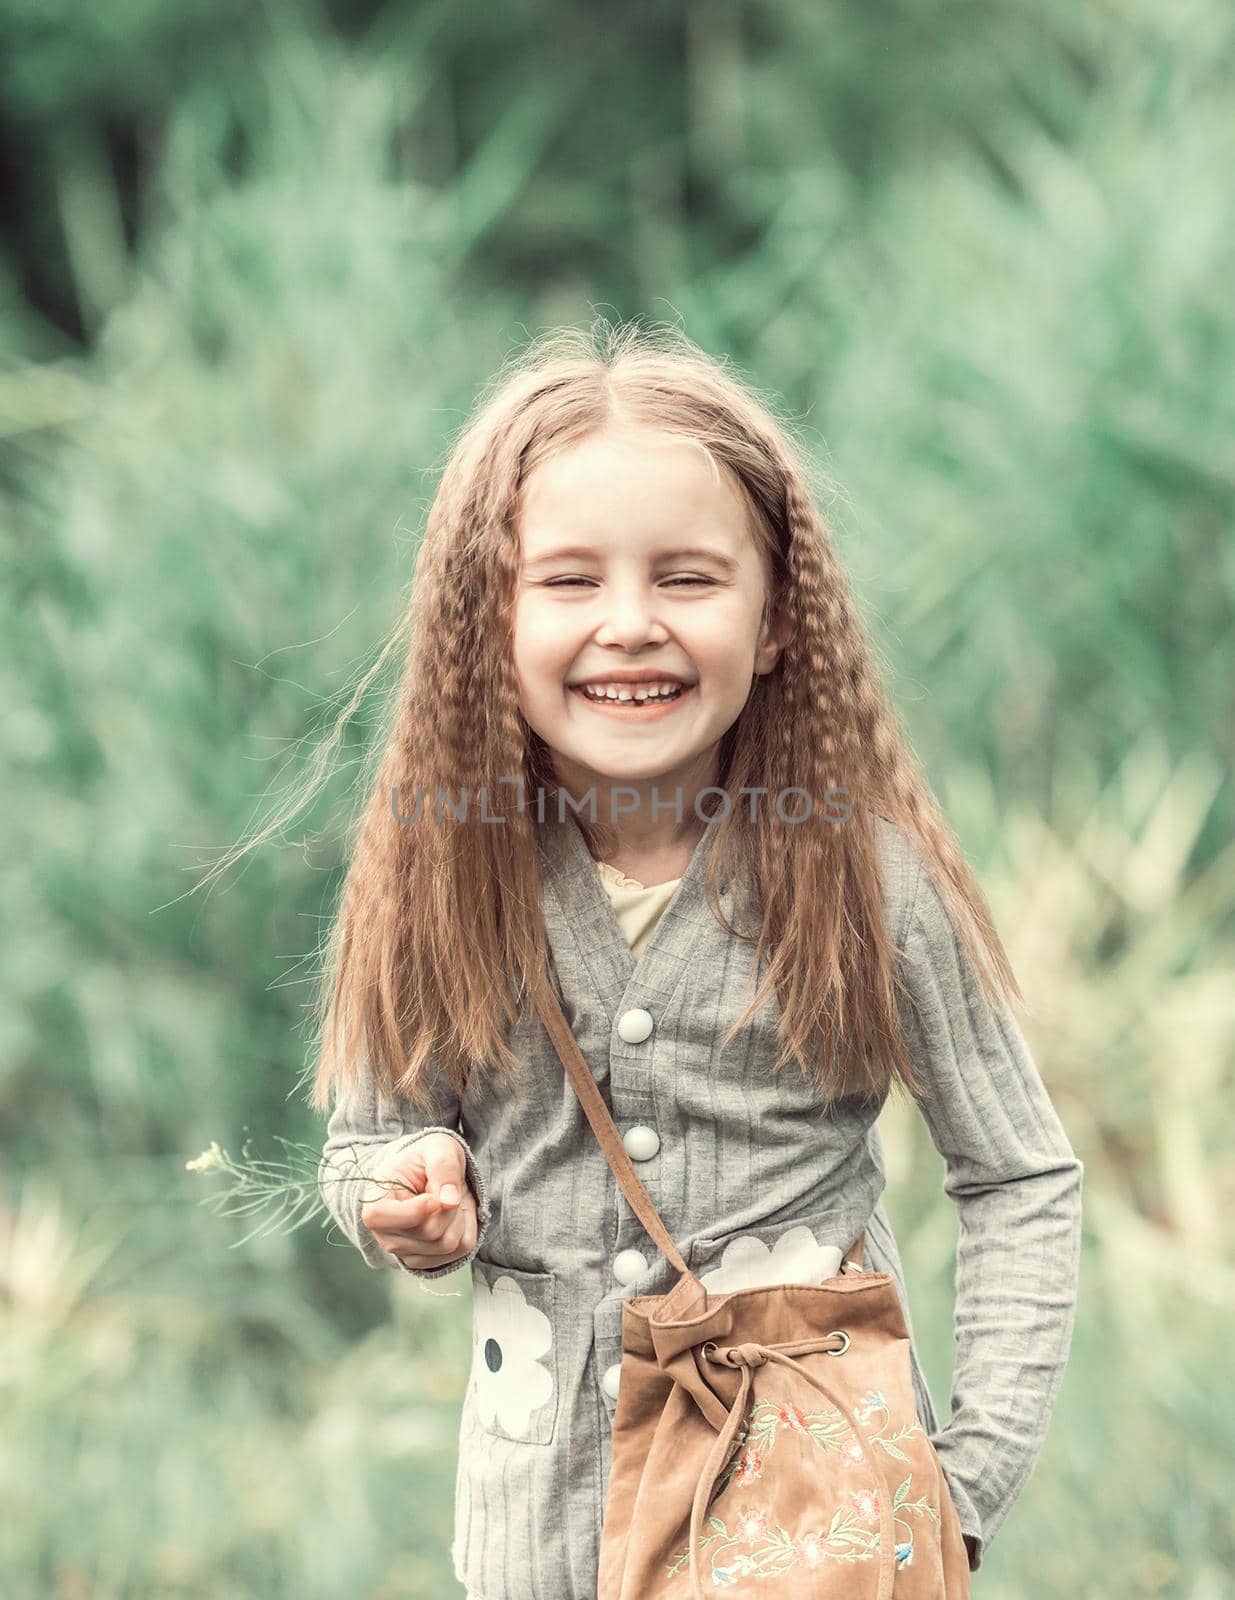 cute little girl is walking in the summer wood